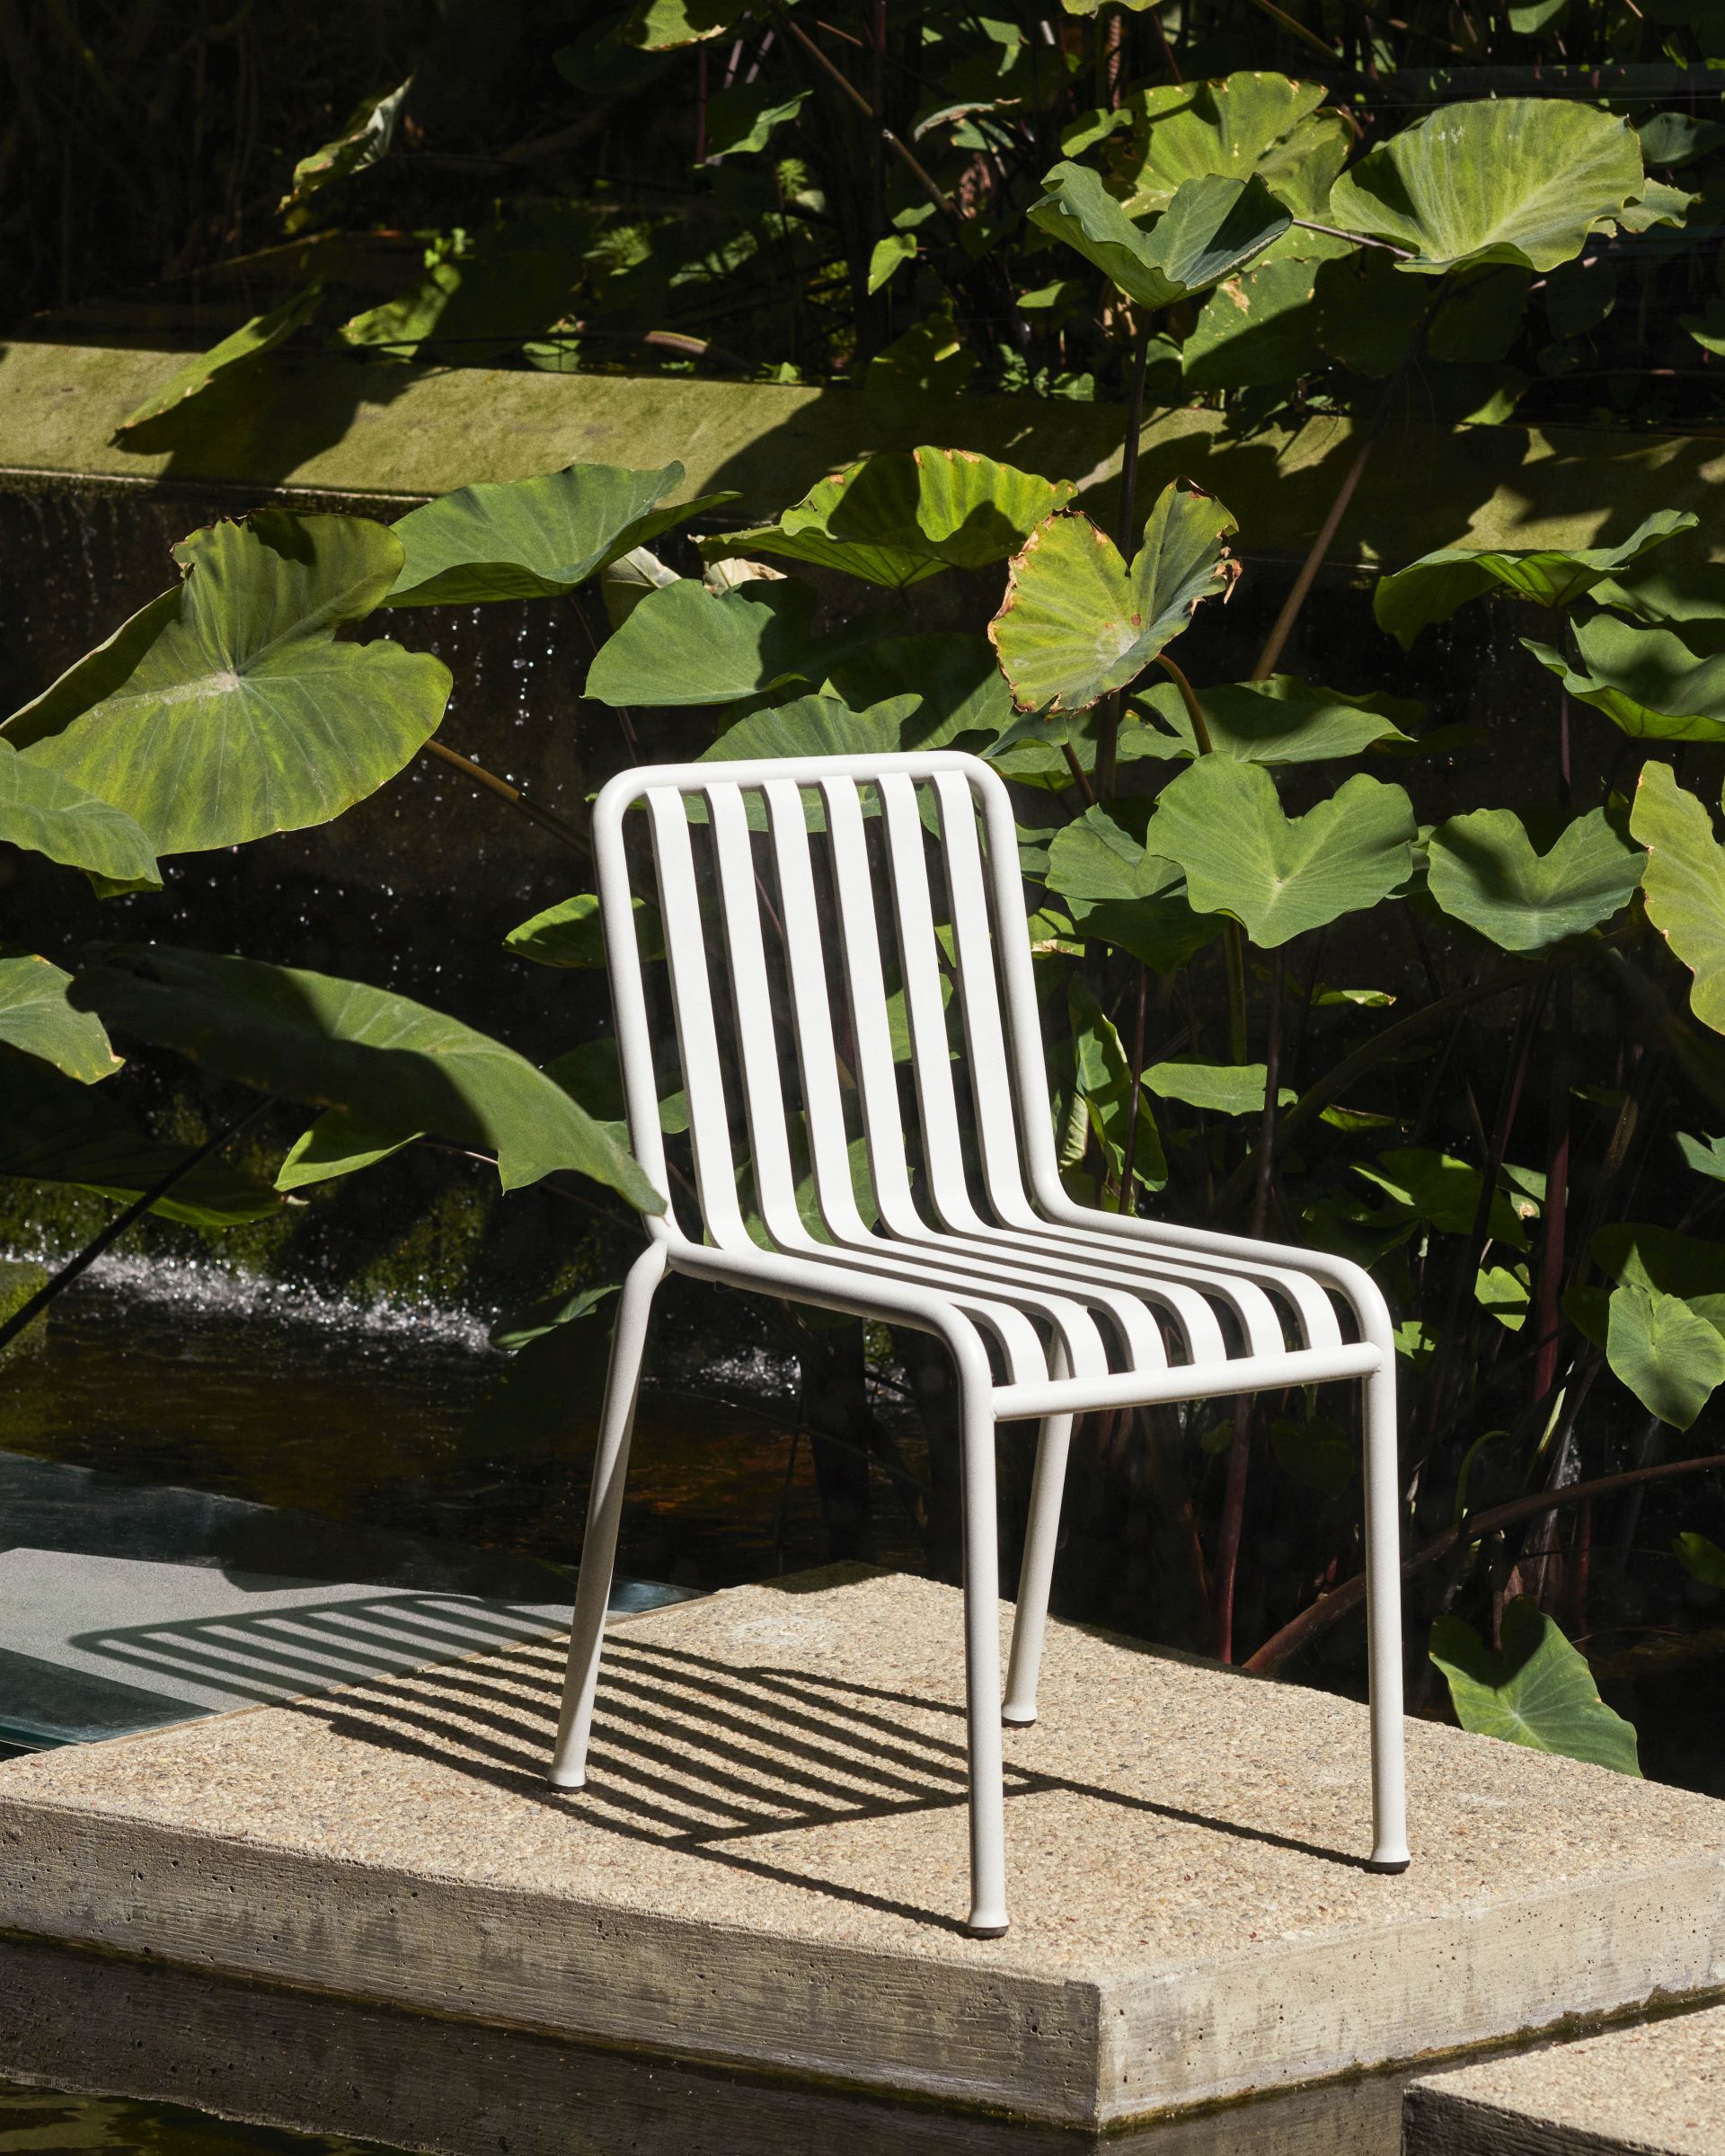 Der HAY Palissade Chair in nebelgrau ist ein komfortables, langlebiges Möbelstück für Garten, Balkon, Terrasse oder Innenhof.